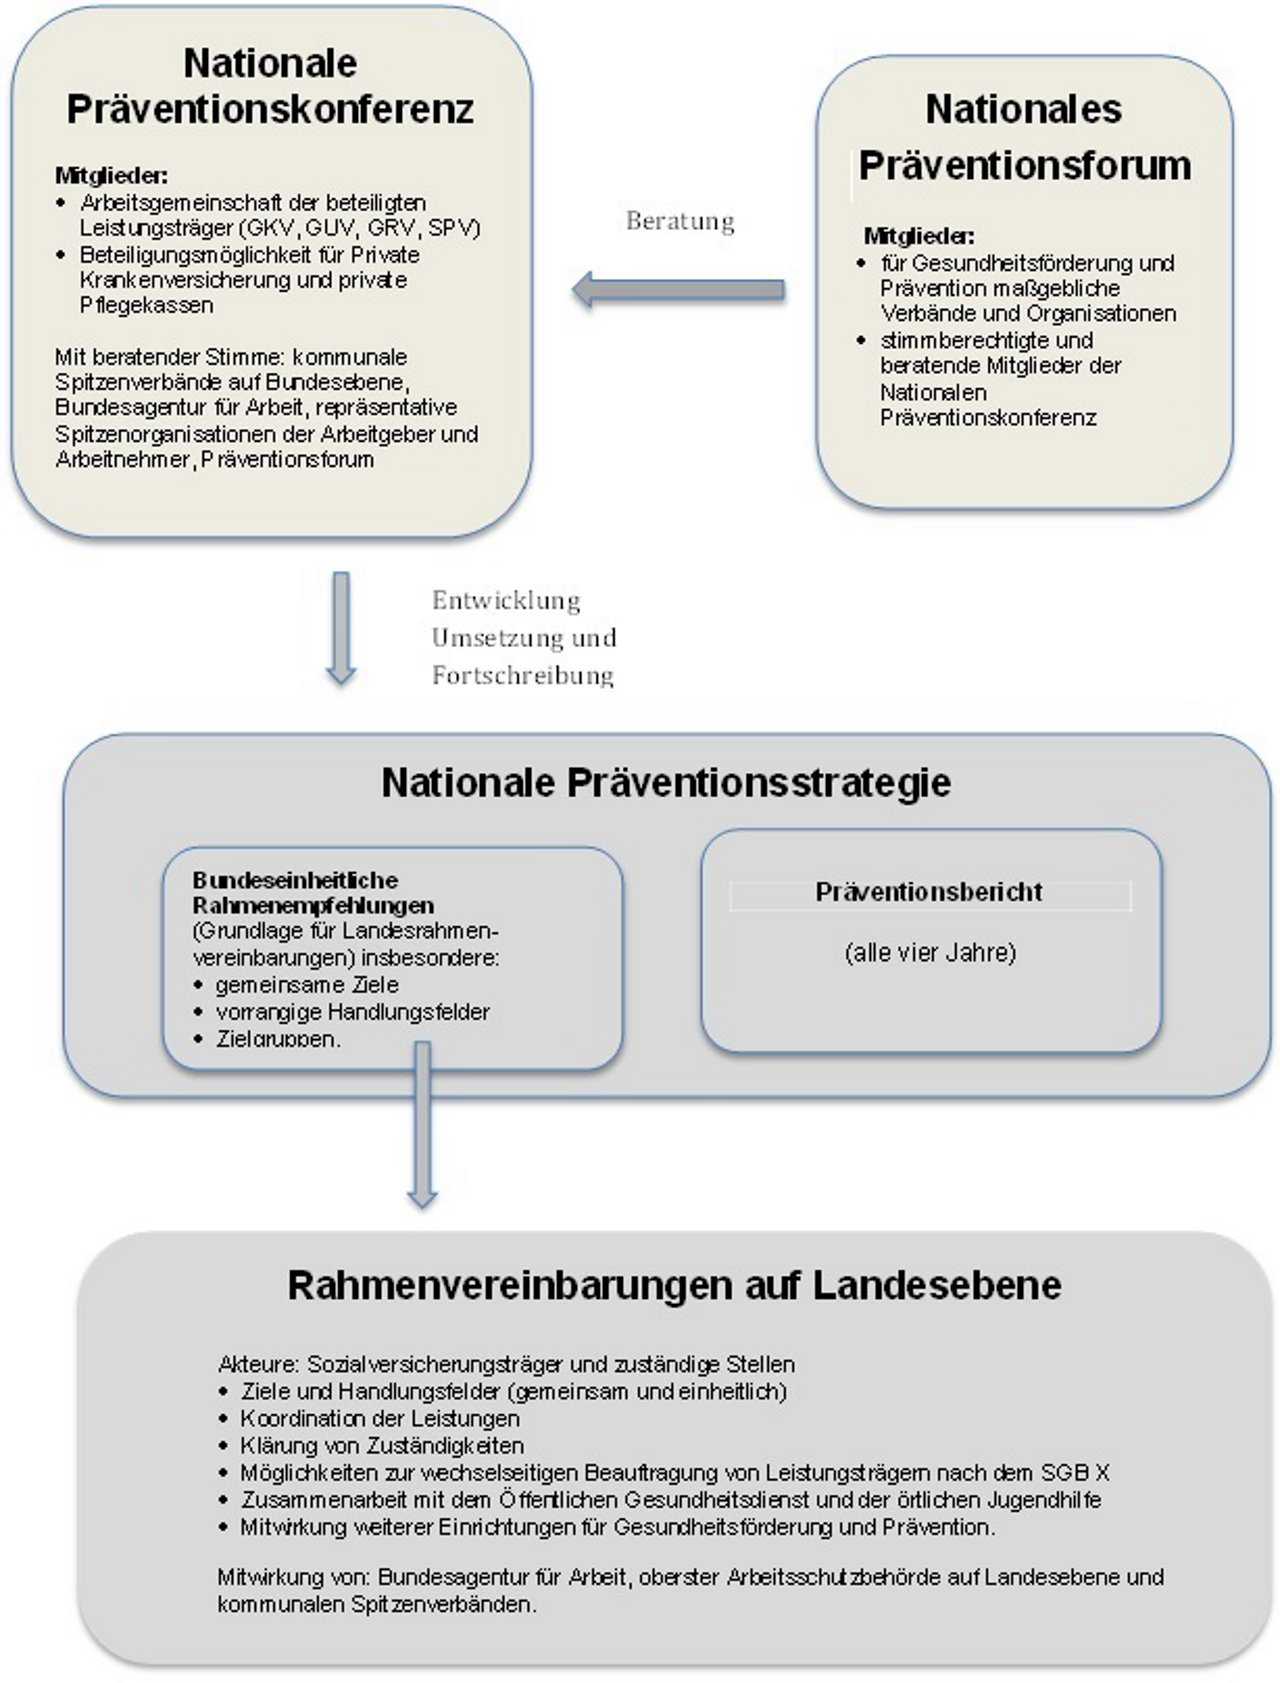 Abb. 1: Kooperations- und Koordinierungsstruktur in Primärprävention und Gesundheitsförderung nach dem Präventionsgesetz (eigene Darstellung)